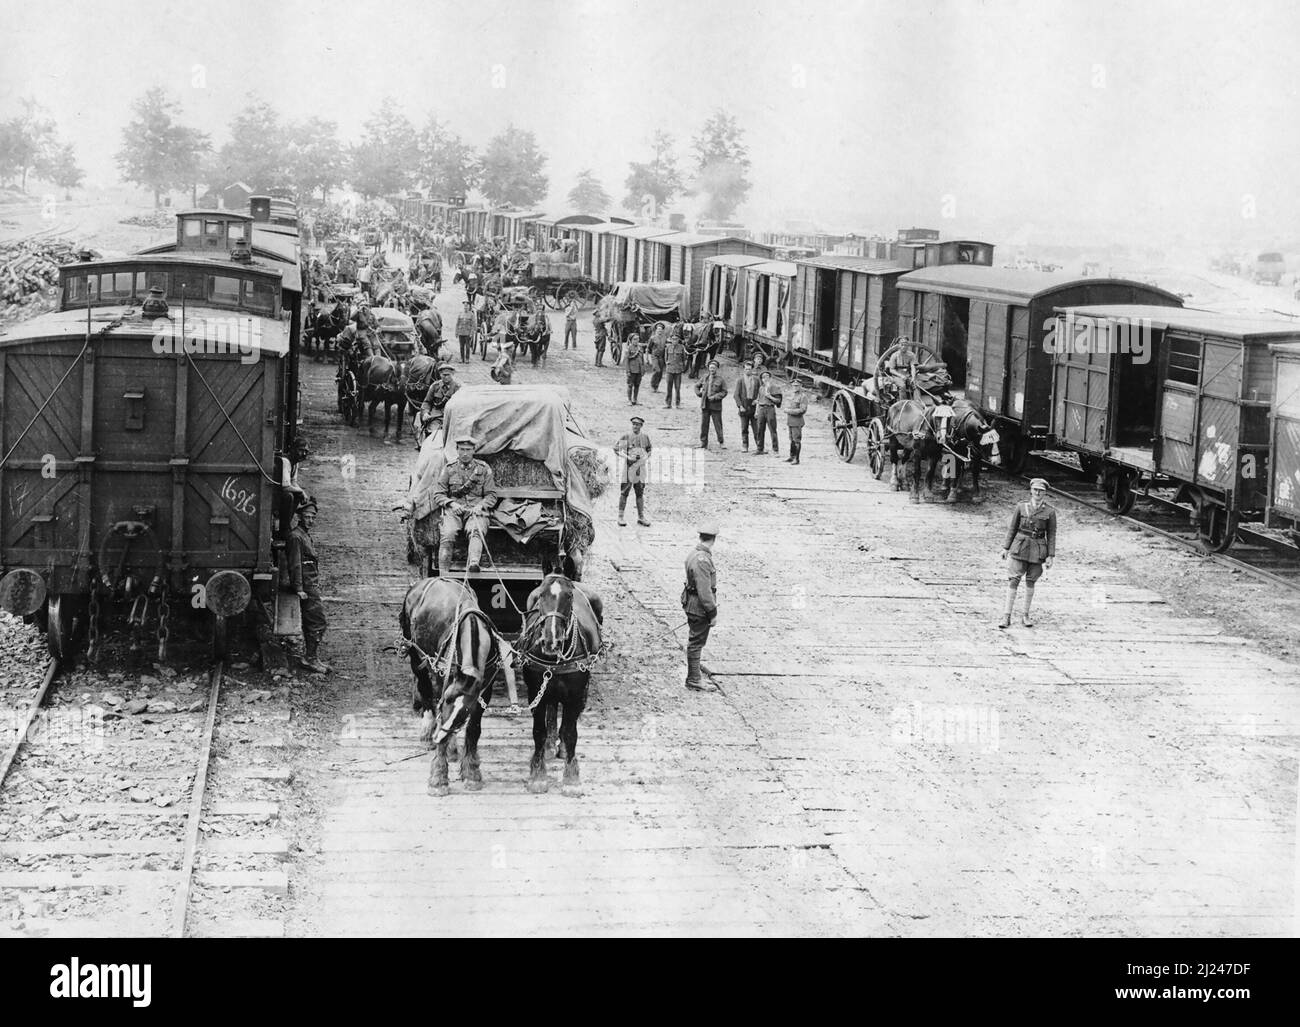 Soldaten entladen Versorgungszüge, Frankreich. Dieses Bild zeigt eine Szene an einem Eisenbahnkopf, wobei der Inhalt von zwei langen Reihen von Eisenbahnwaggons entladen wird. Stockfoto